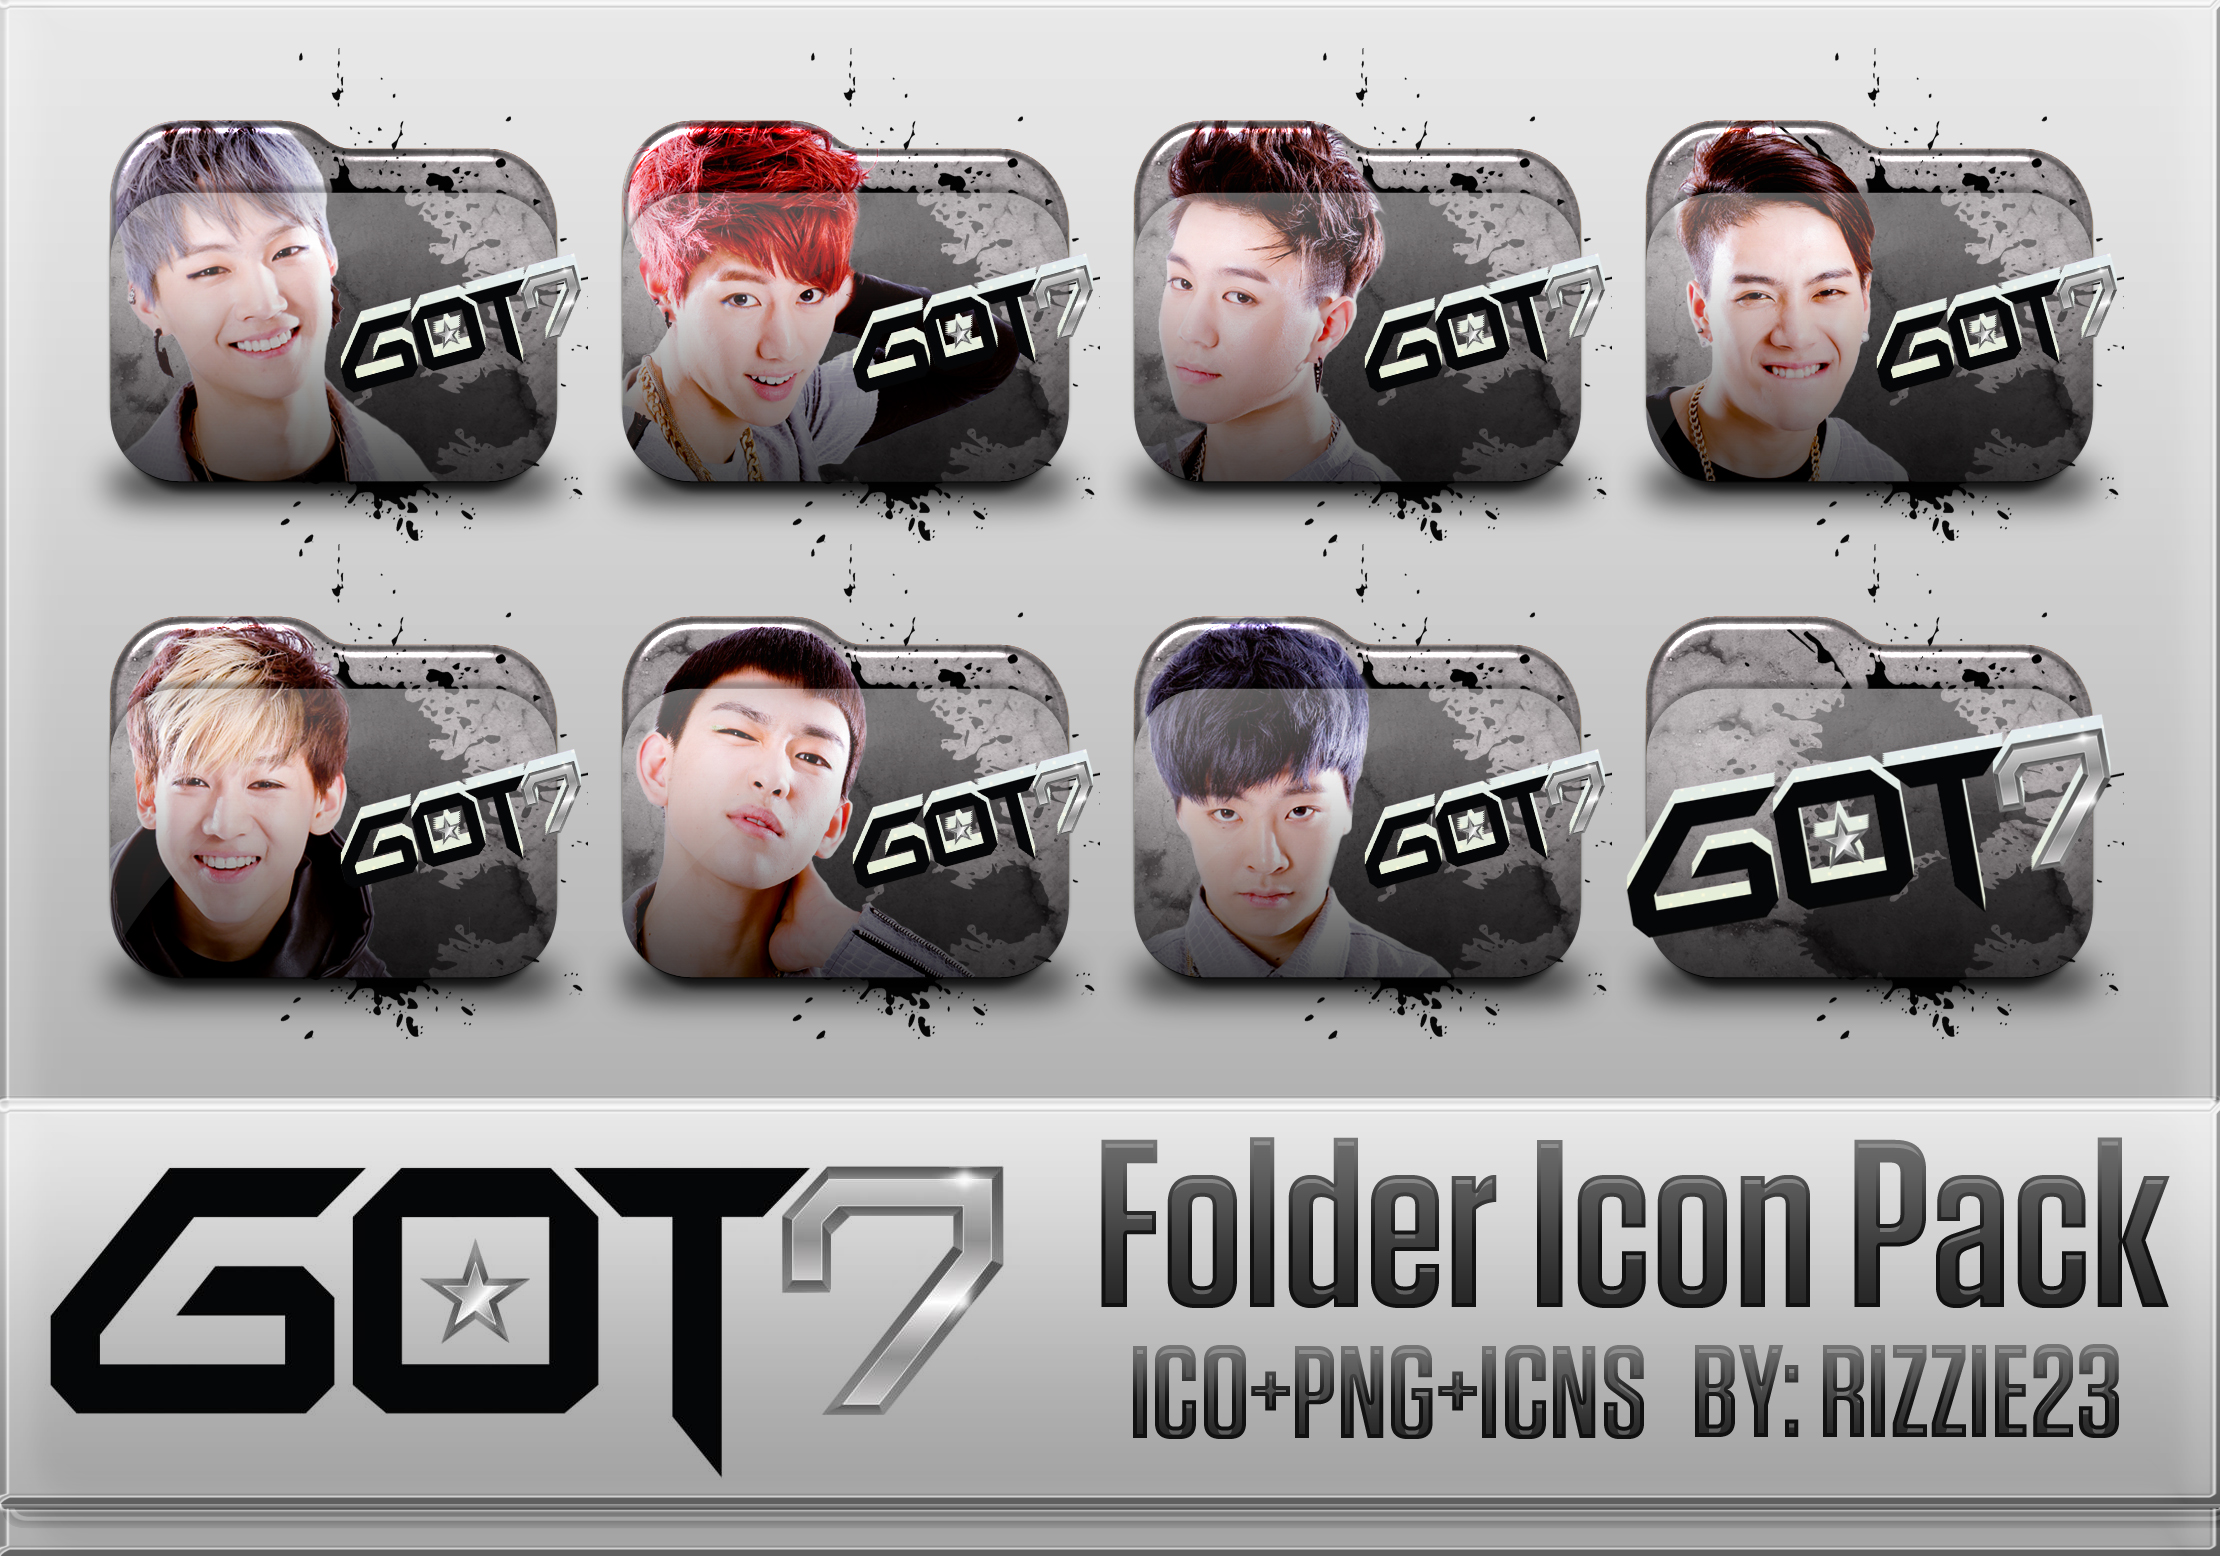 Got7 Folder Icon Pack